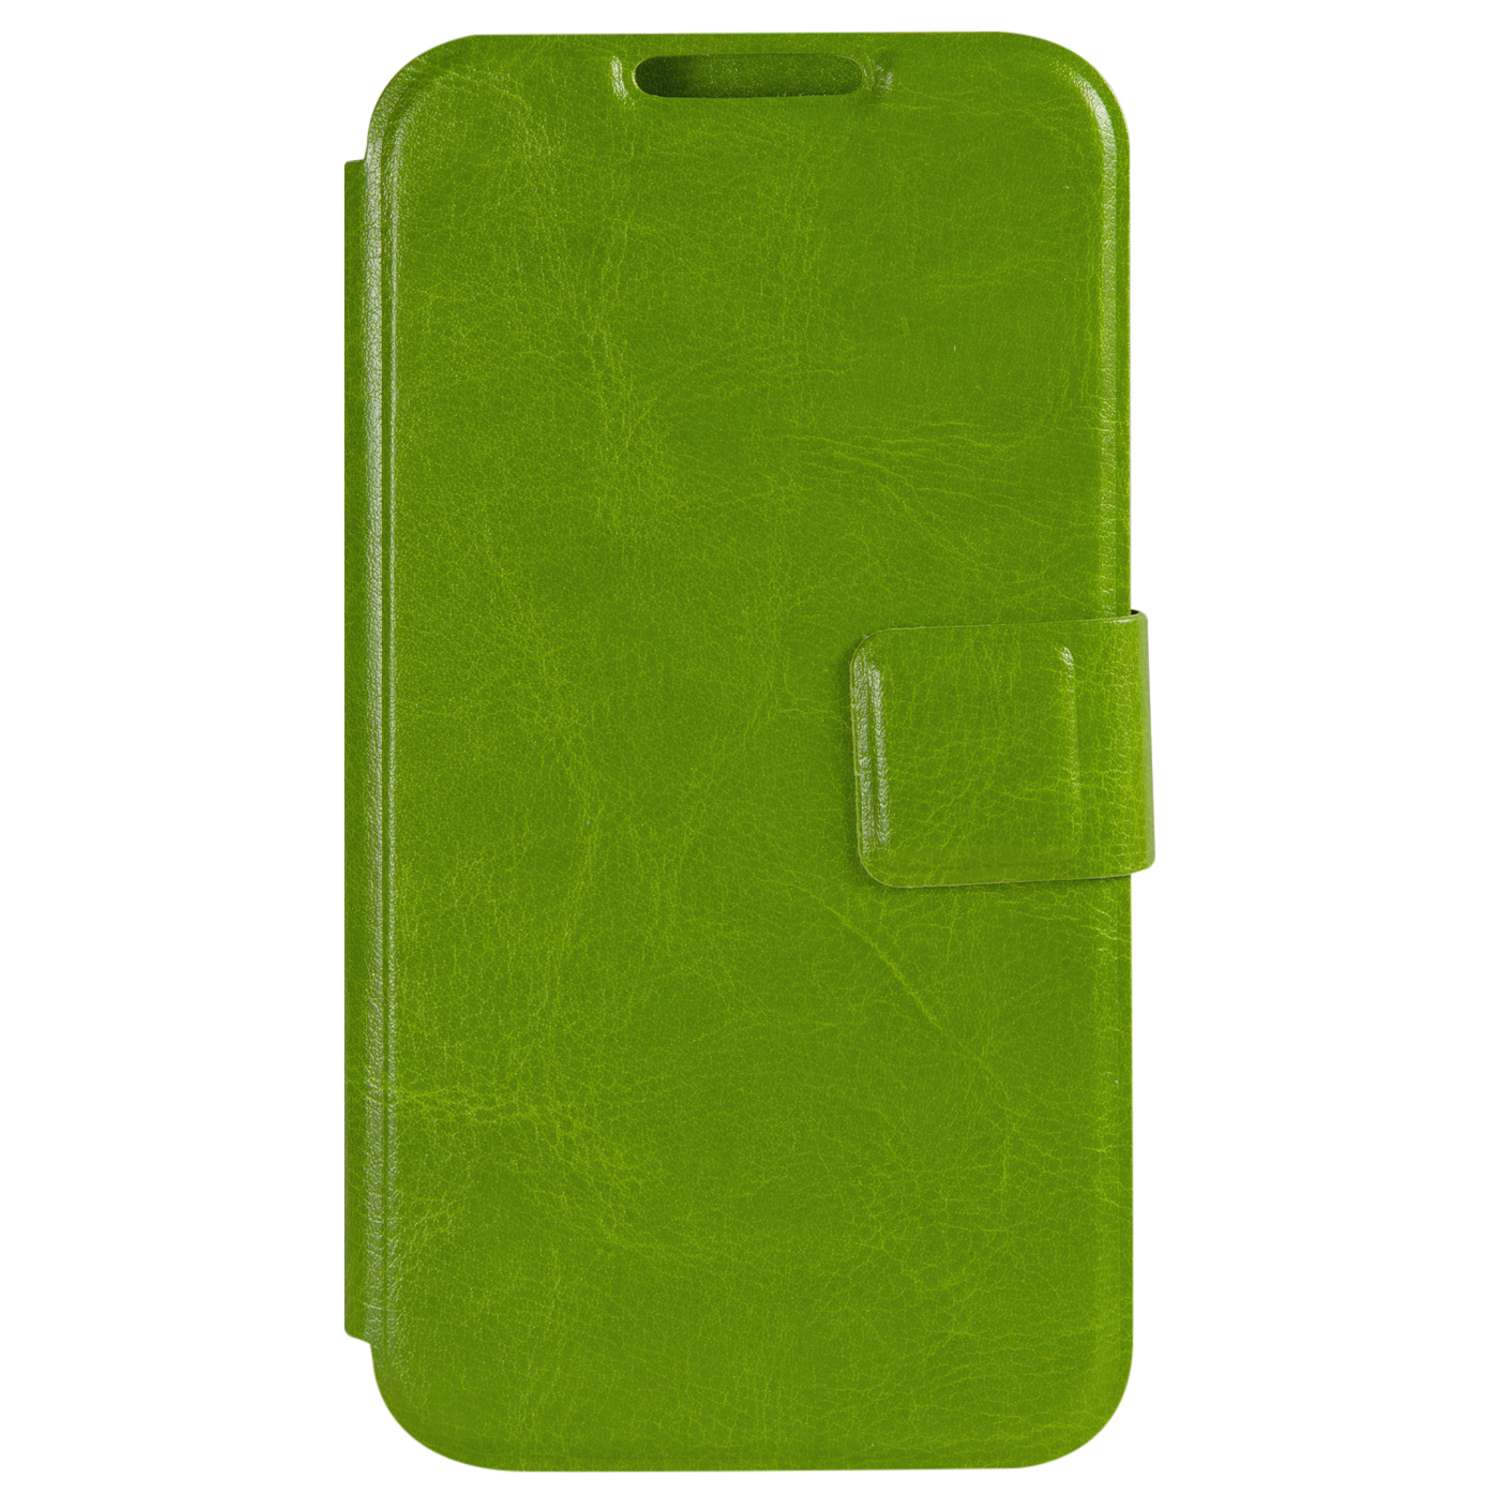 Чехол универсальный iBox Universal для телефонов 4.2-5 дюйма зеленый - фото 2